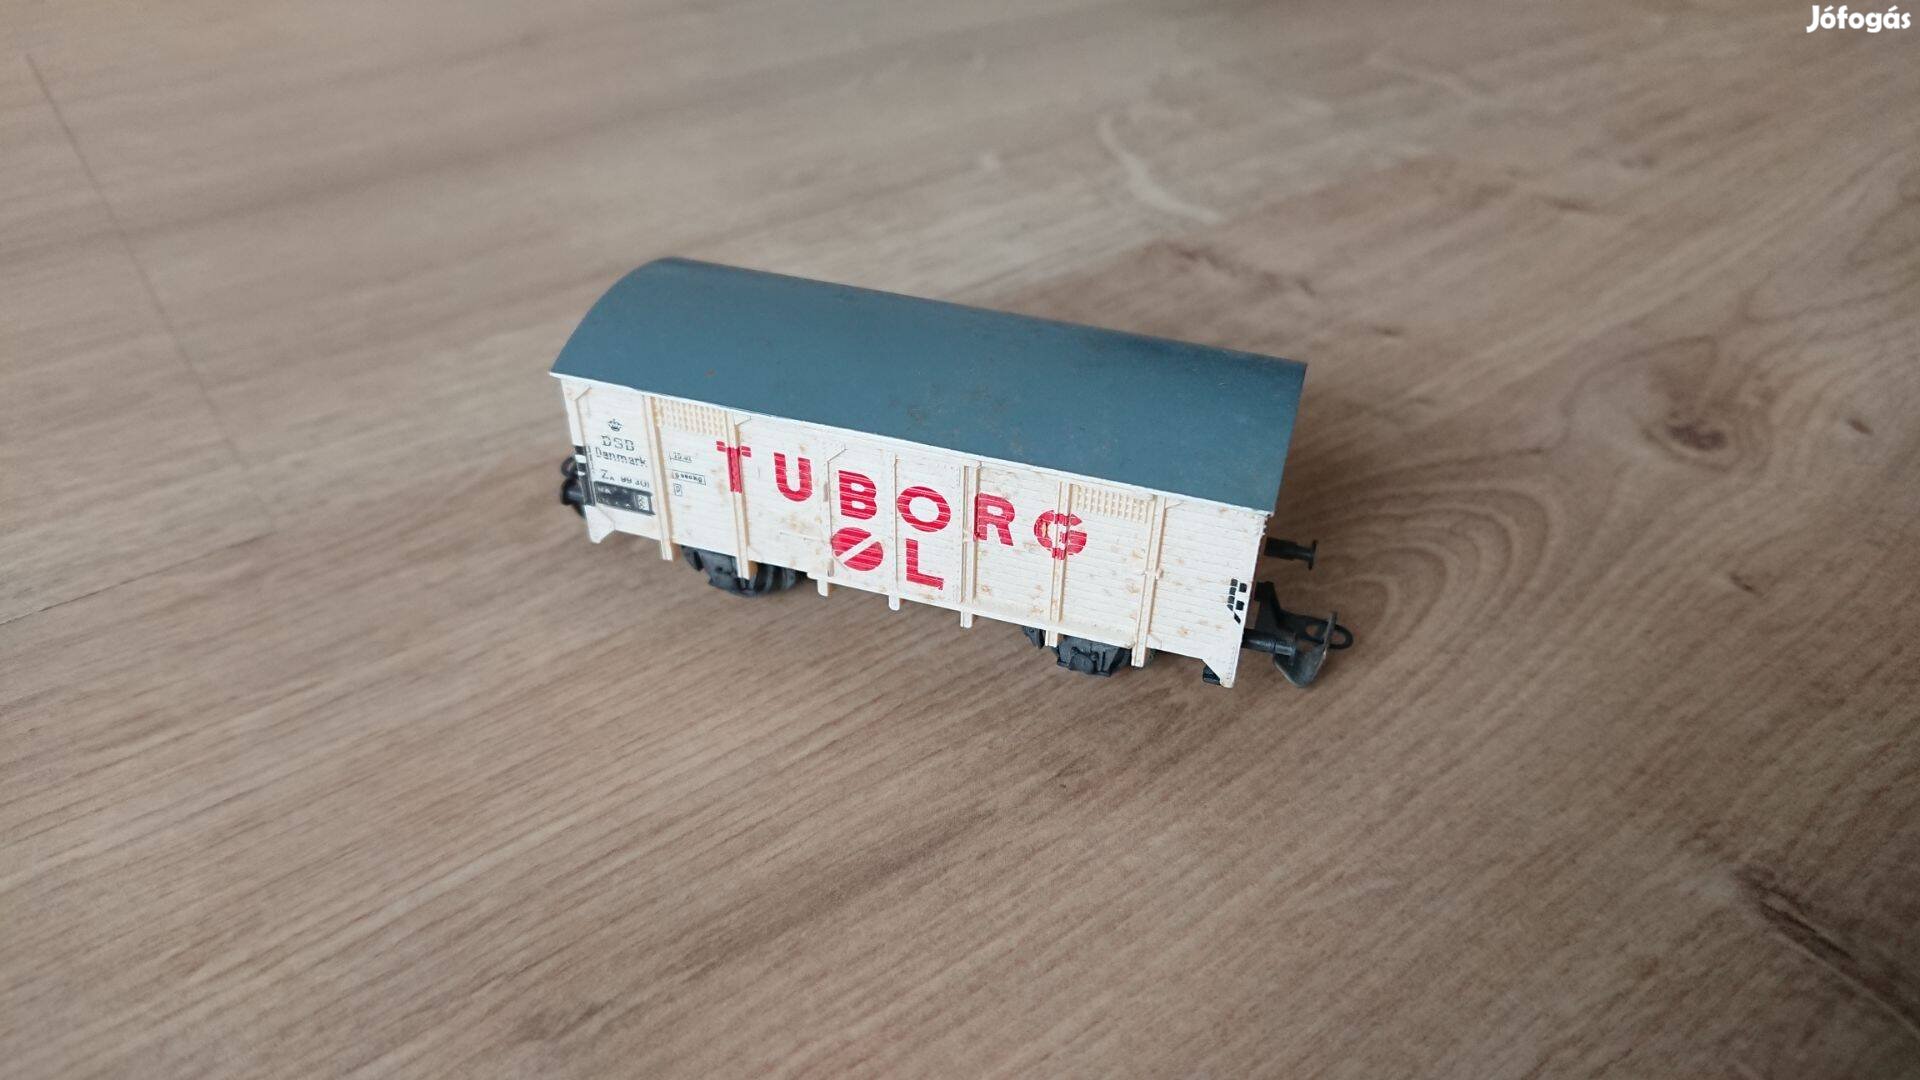 Tuborg sörszálító modellvasút hűtőkocsi kocsi vasúti vagon modell